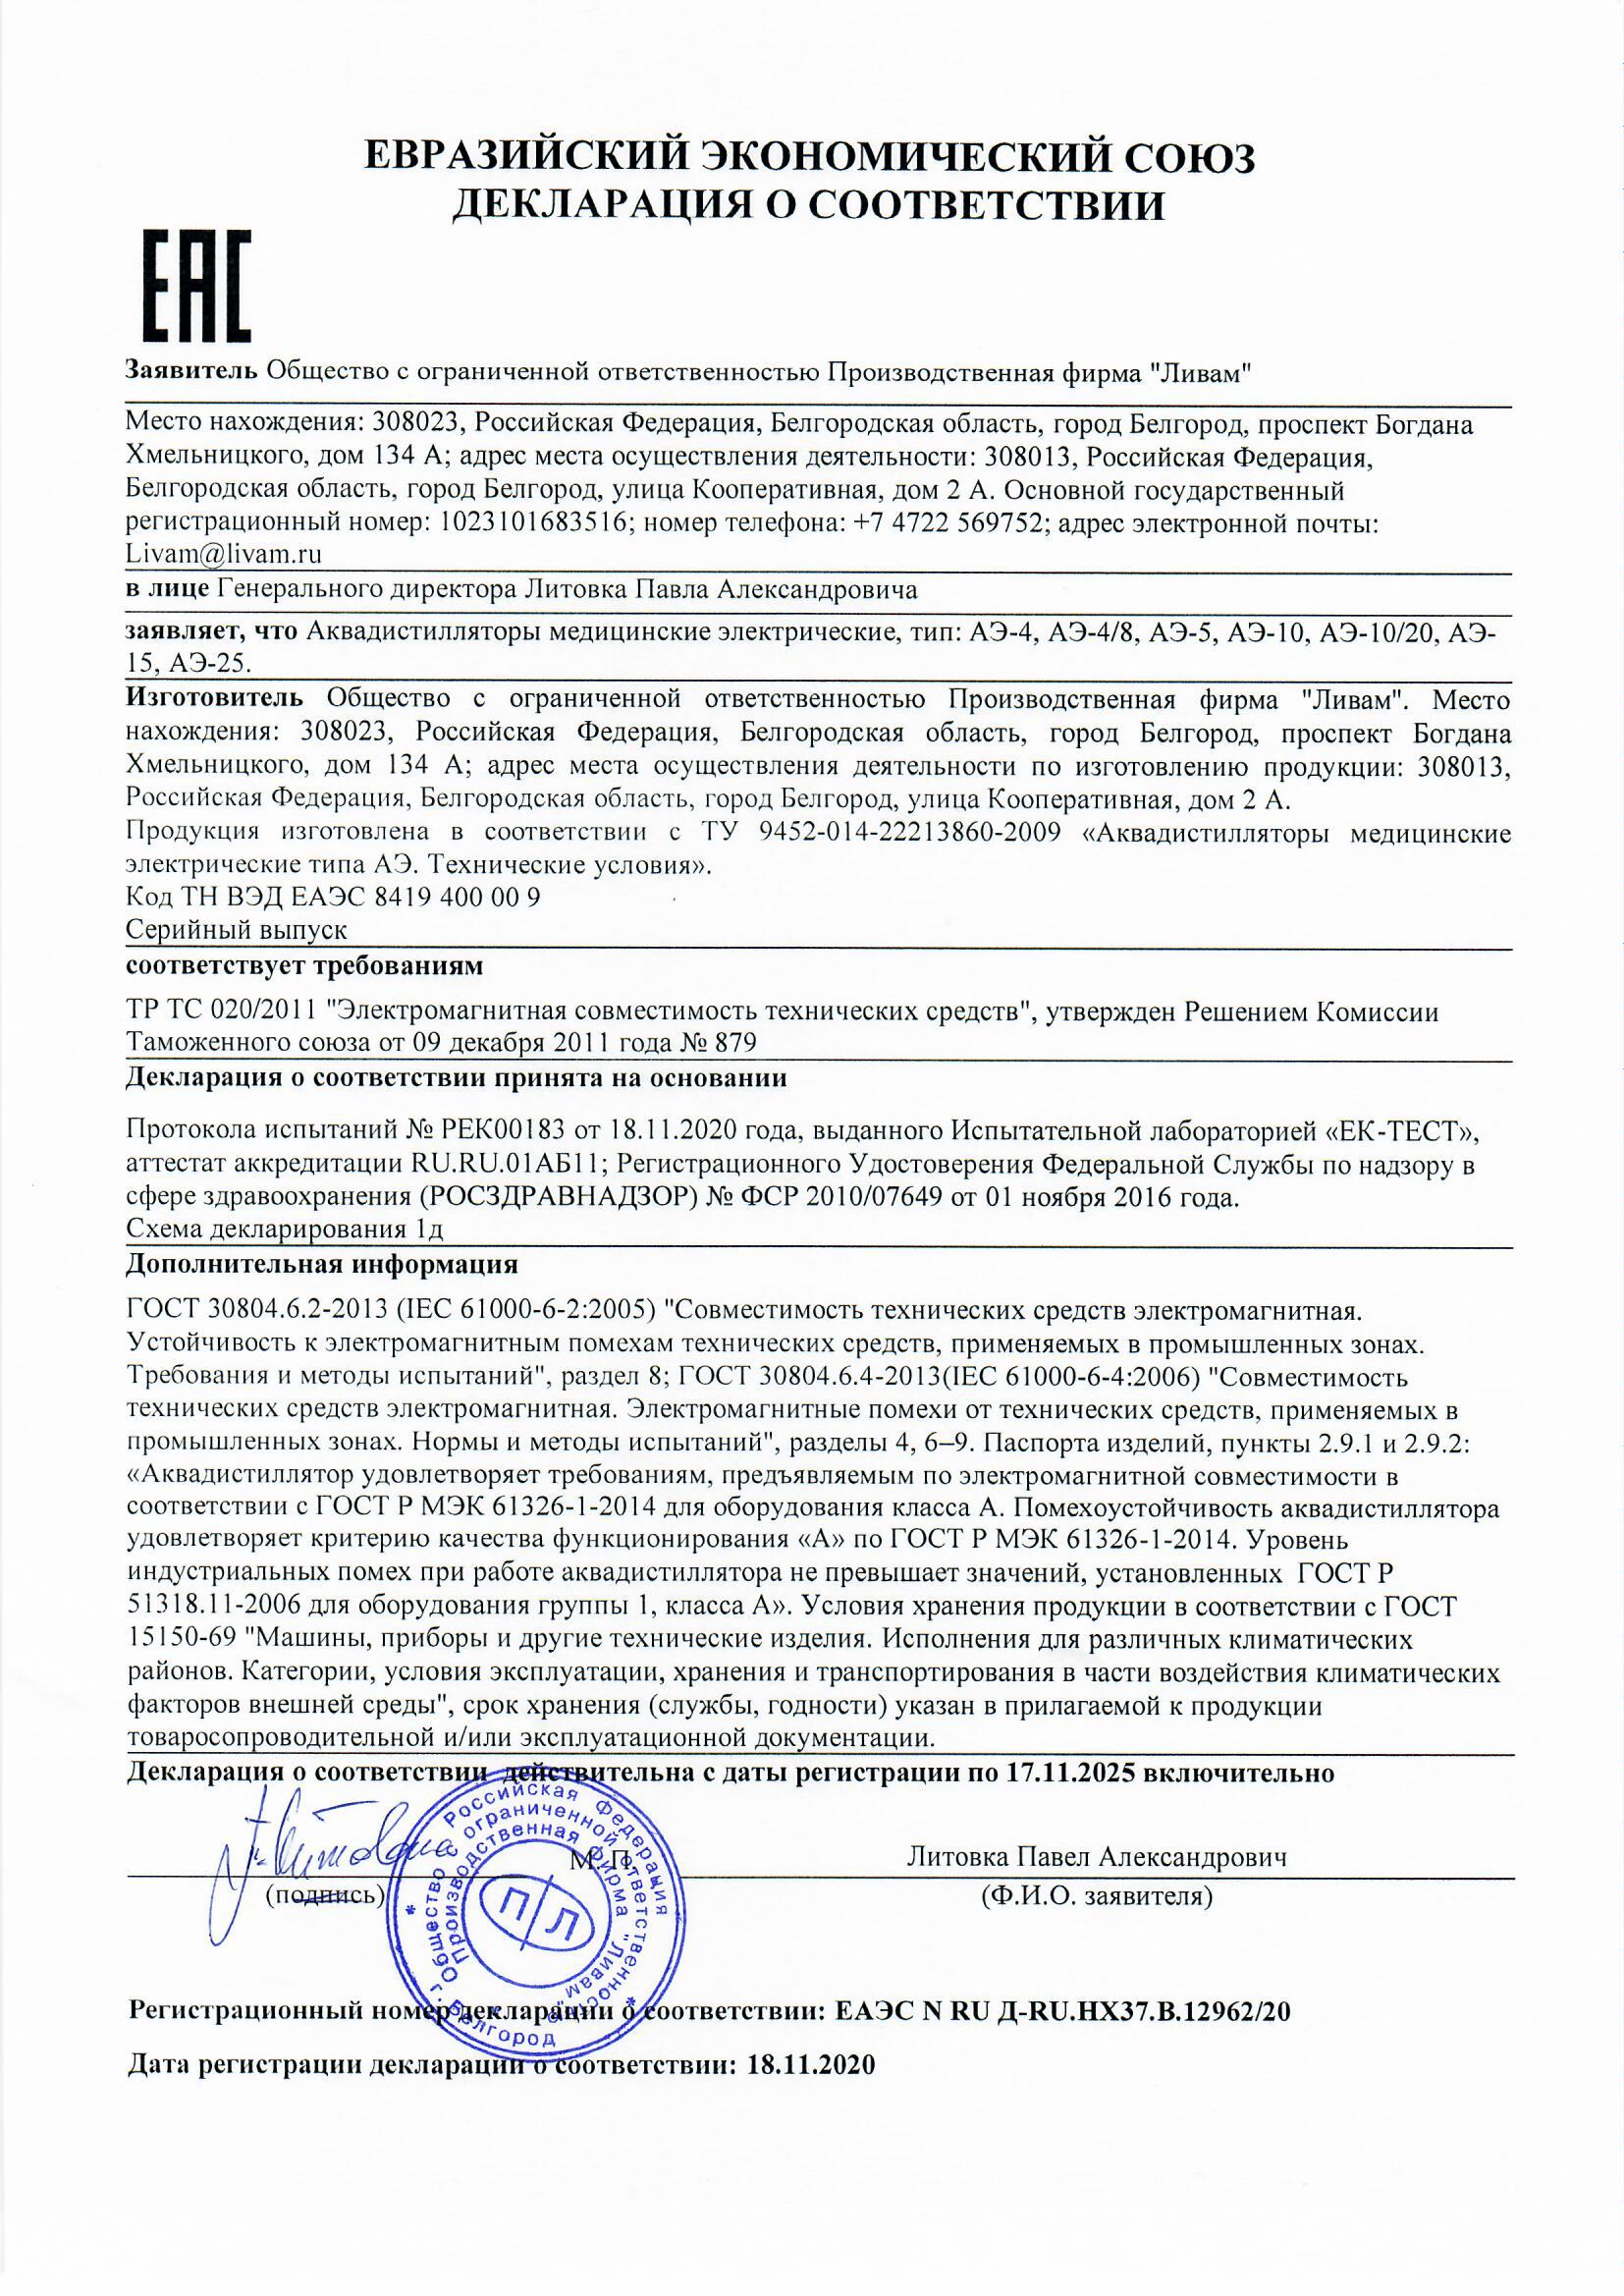 Декларация о соответствии дистилляторов АЭ ТР ТС 020-2011 Электромагнитная совместимость